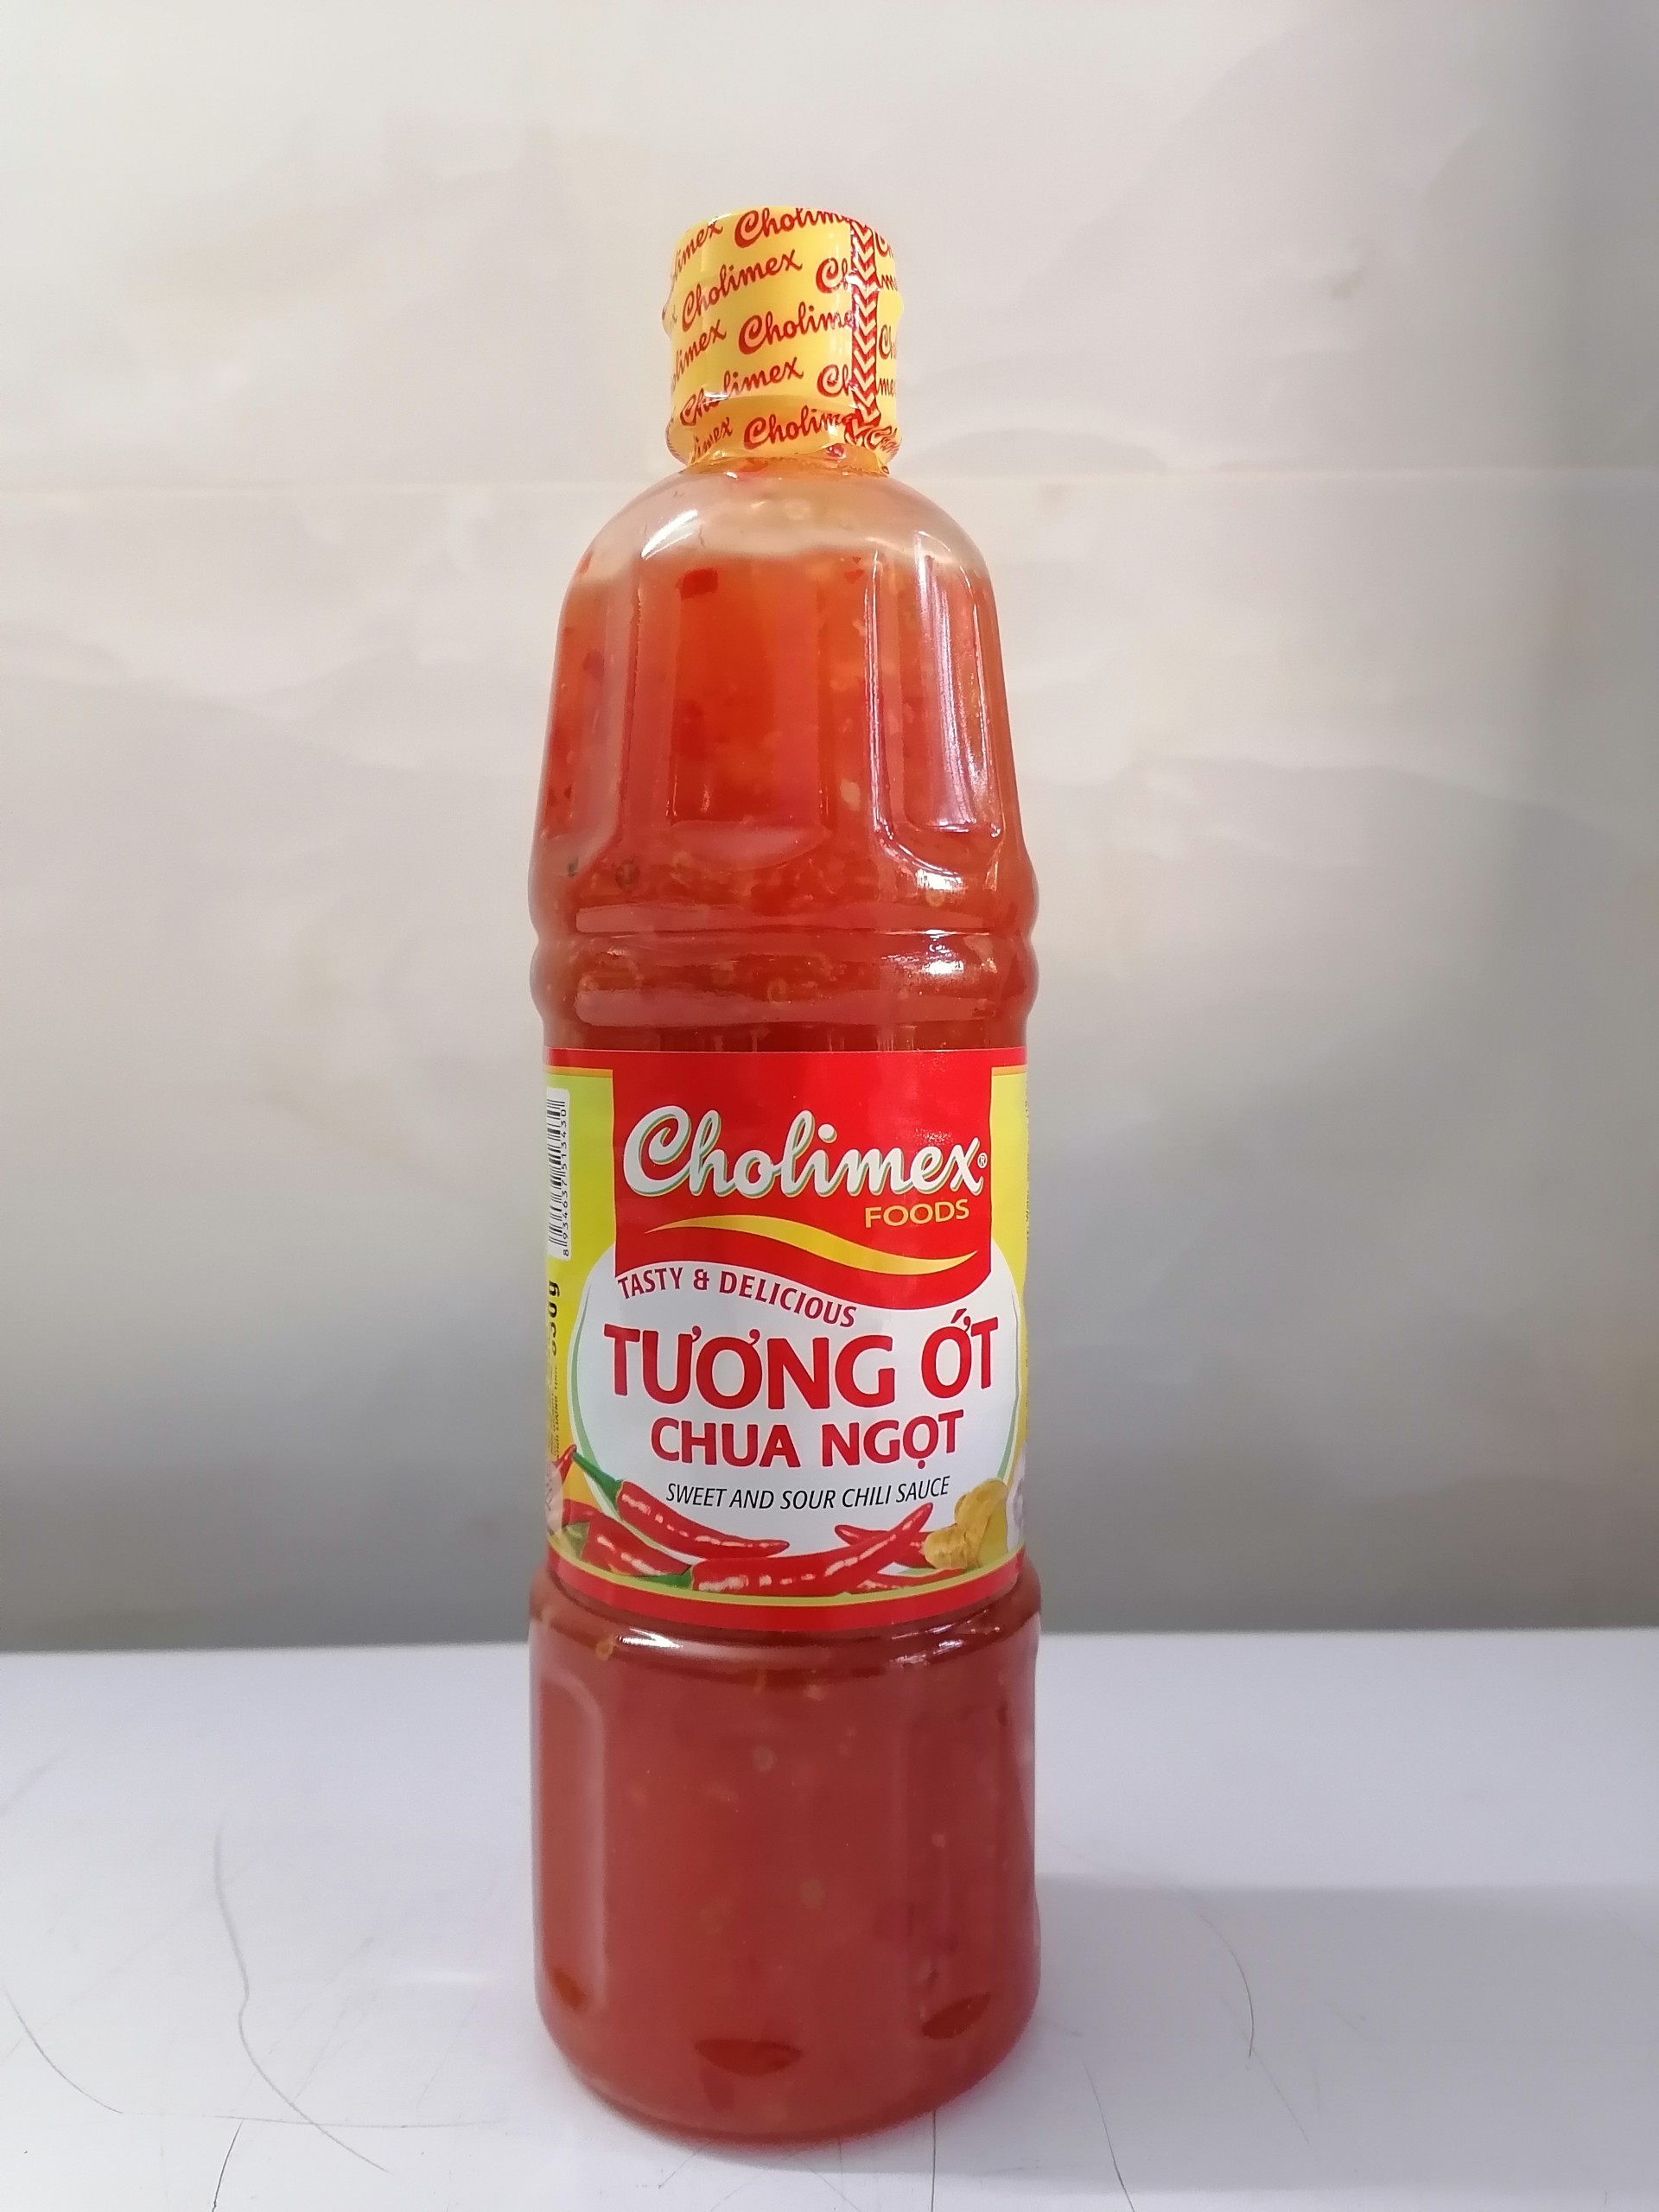 830g Chua ngọt Tương Ớt VN CHOLIMEX Sweet and Sour Chili Sauce choli-hk